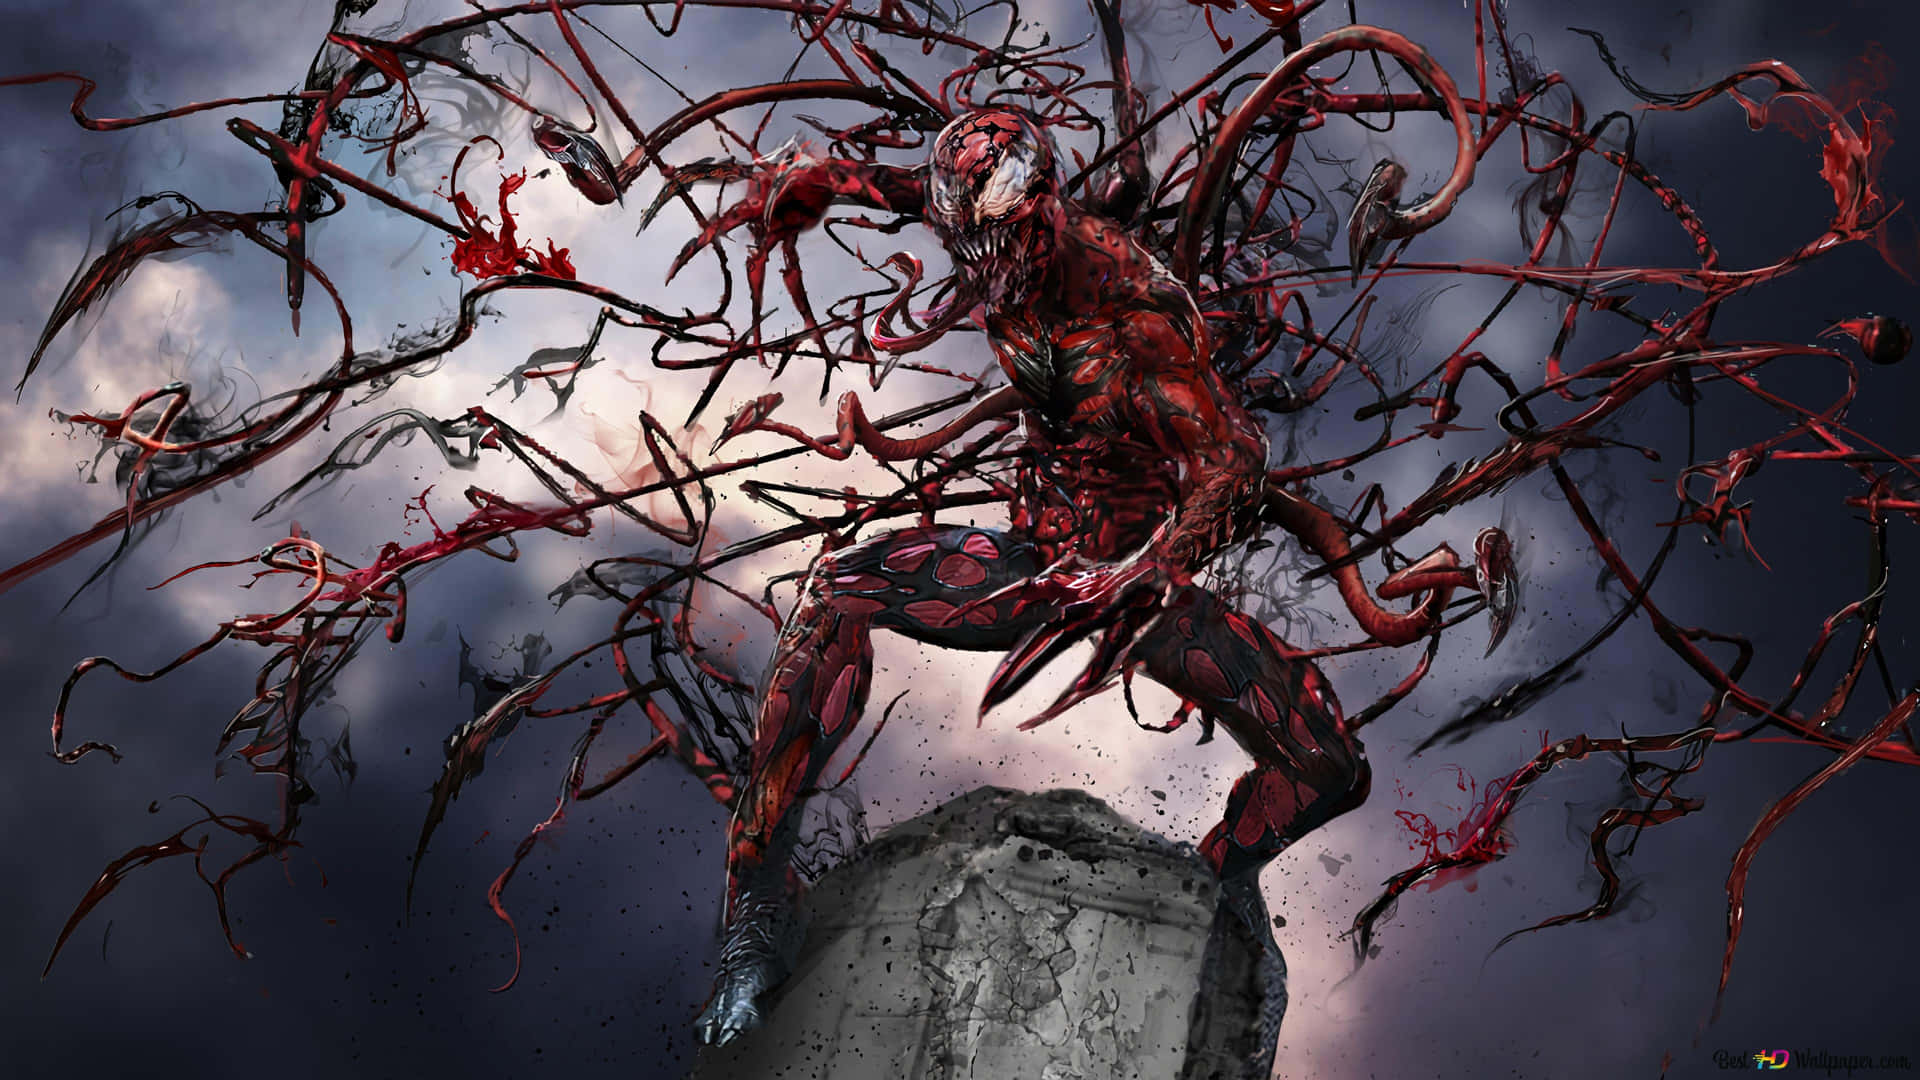 Carnage, den makabre Marvel superskurk i en truende stilling. Wallpaper